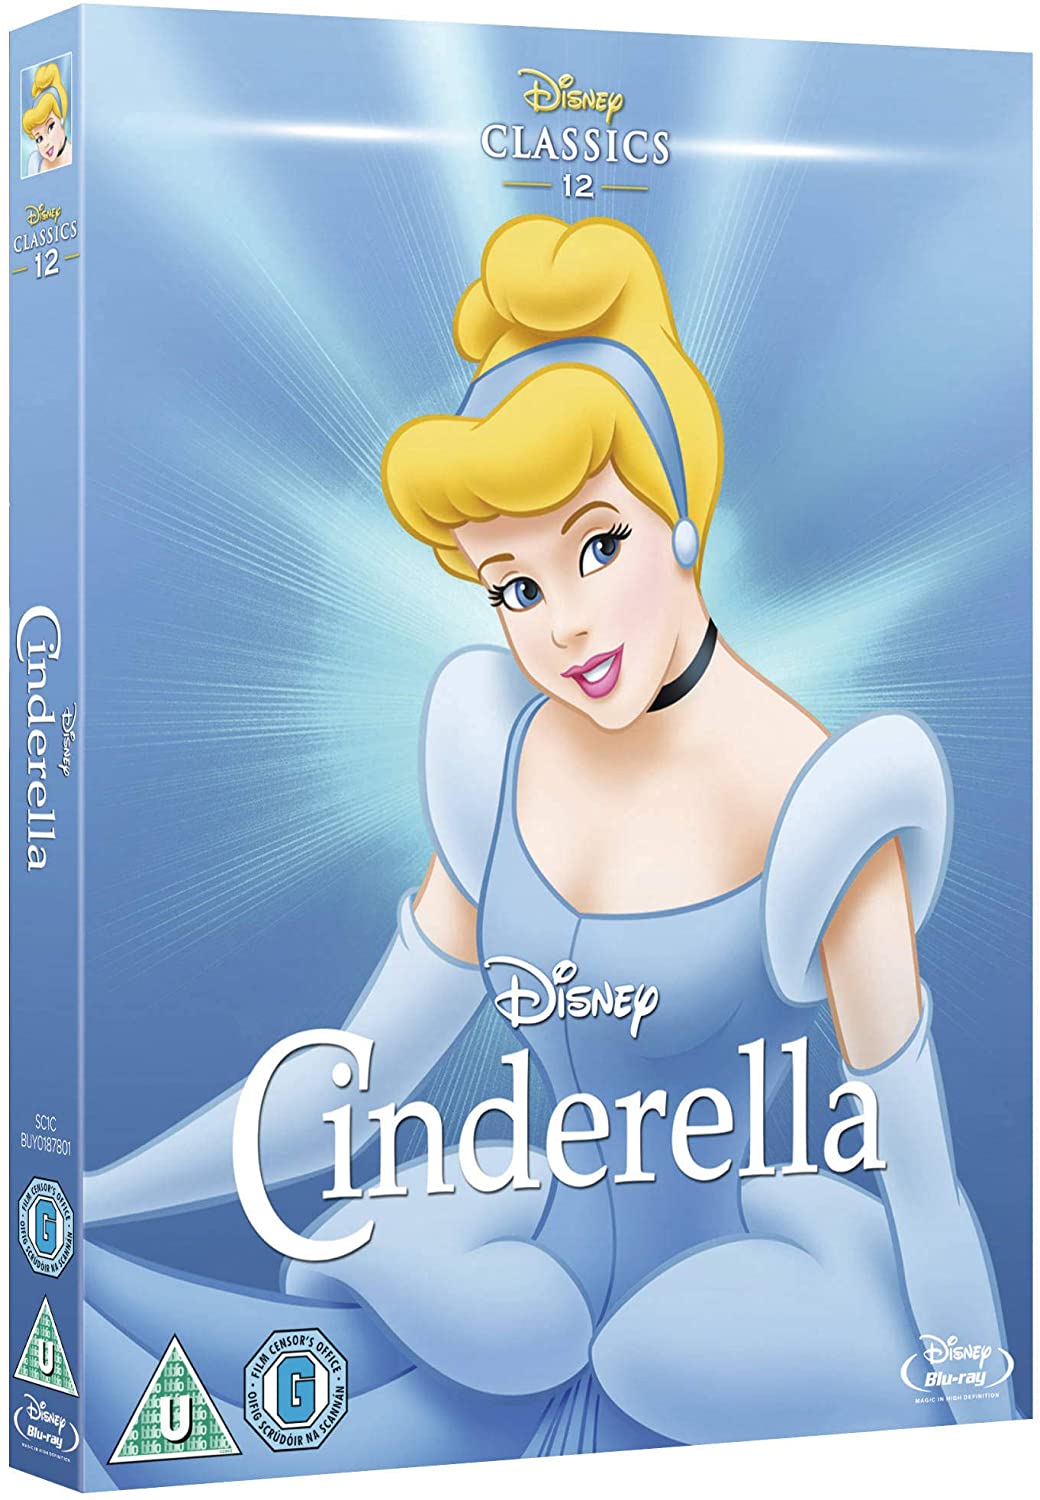 Cinderella [Blu-ray] [1950] [Region Free]